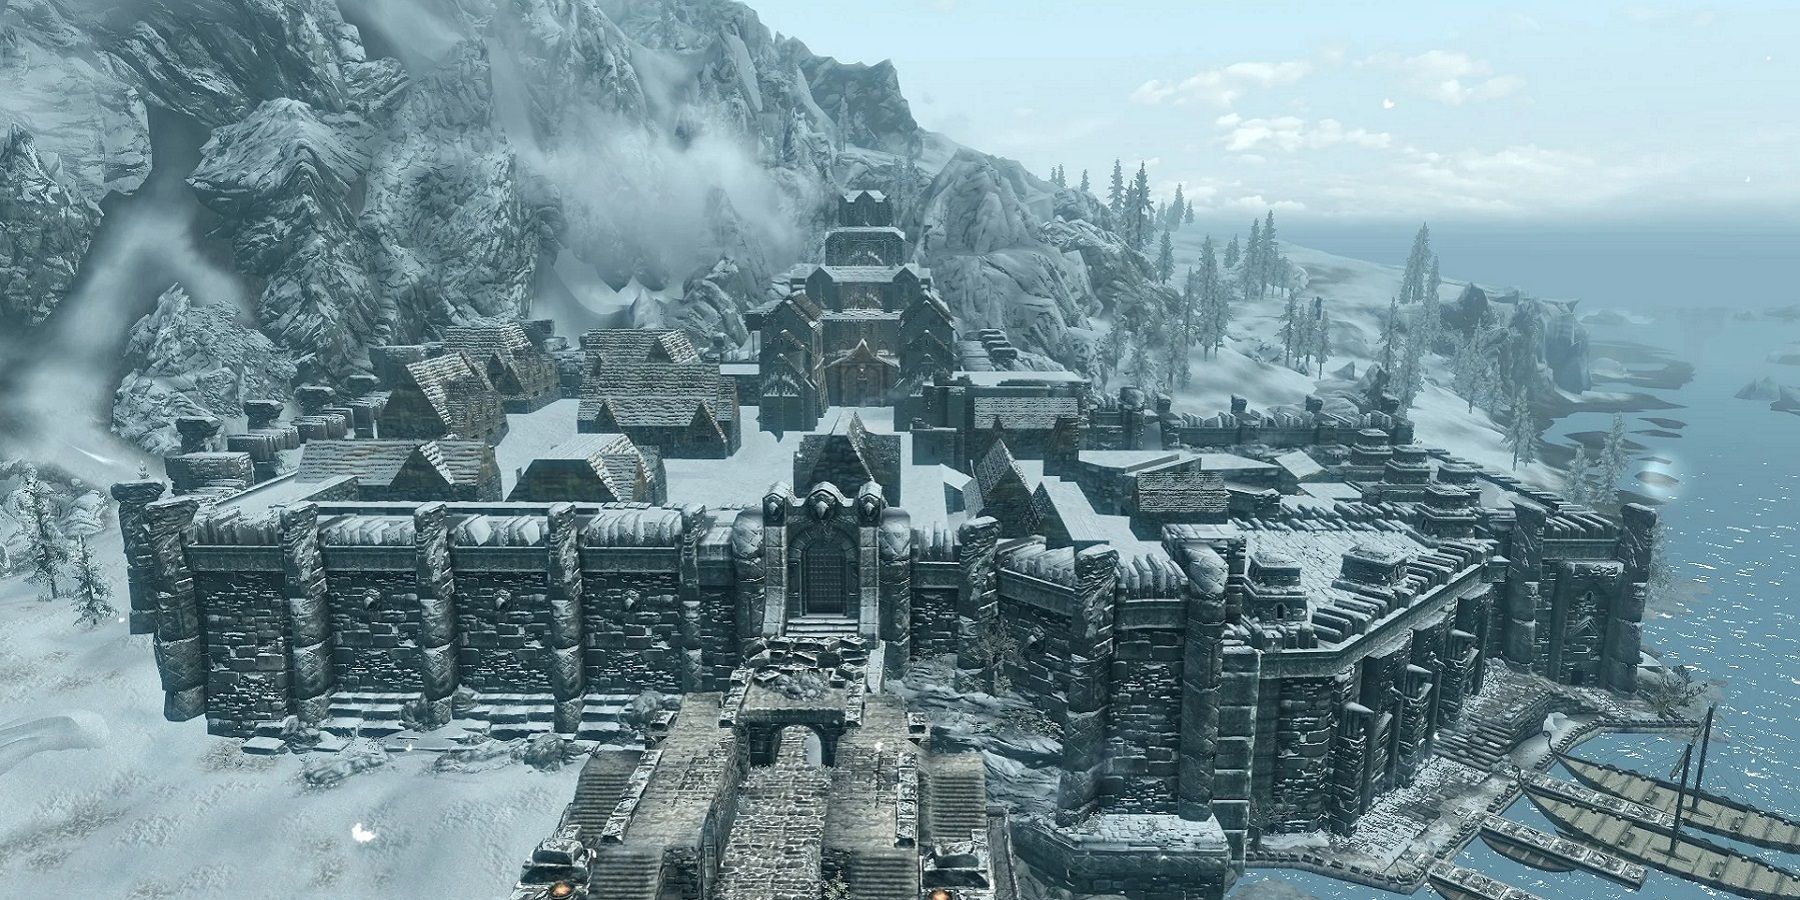 Image de Skyrim montrant une vue grand angle de la ville froide de Windhelm.